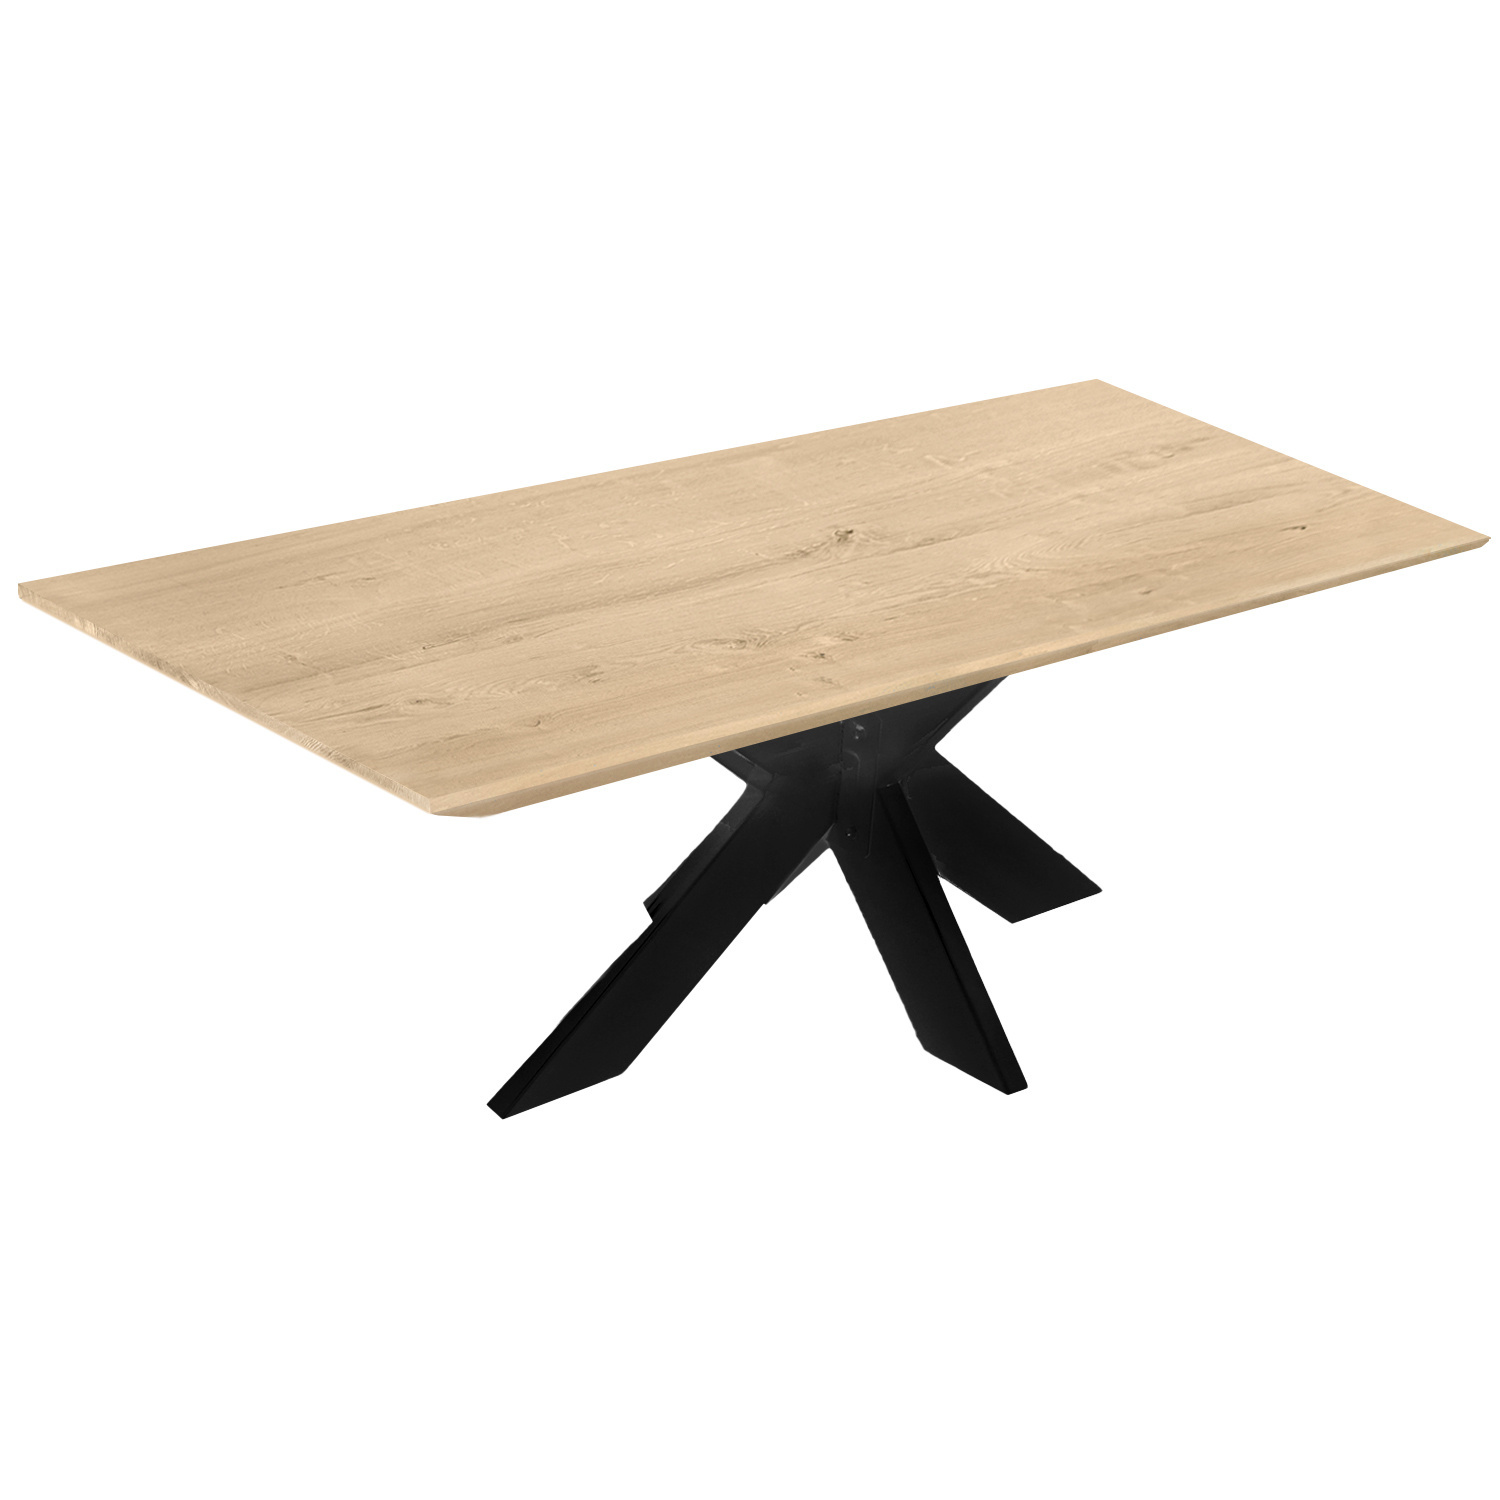  Tischplatte Wildeiche - Schweizer Kante - 4 cm dick (1-Schicht) - XXL Lamellen (14-20 cm breit) - Asteiche (rustikal) - verleimt & künstlich getrocknet (HF 8-12%) - verschiedene Größen